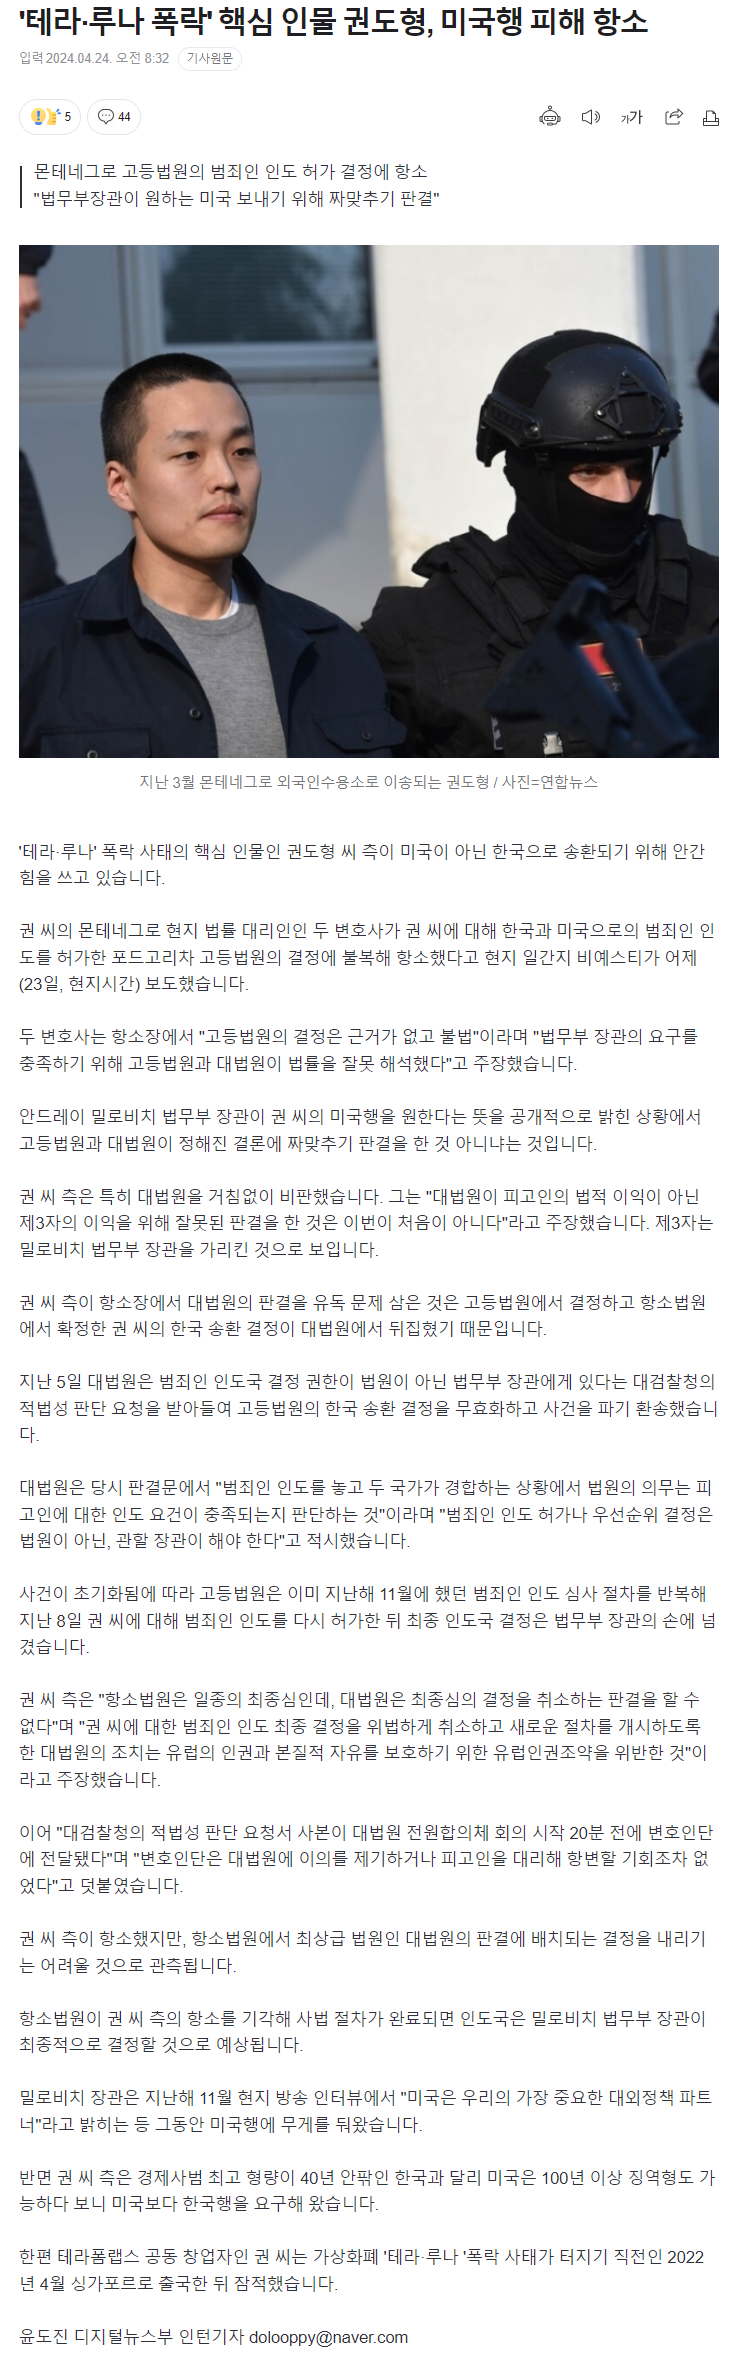 권도형 제발 한국으로 보내달라고 항소중